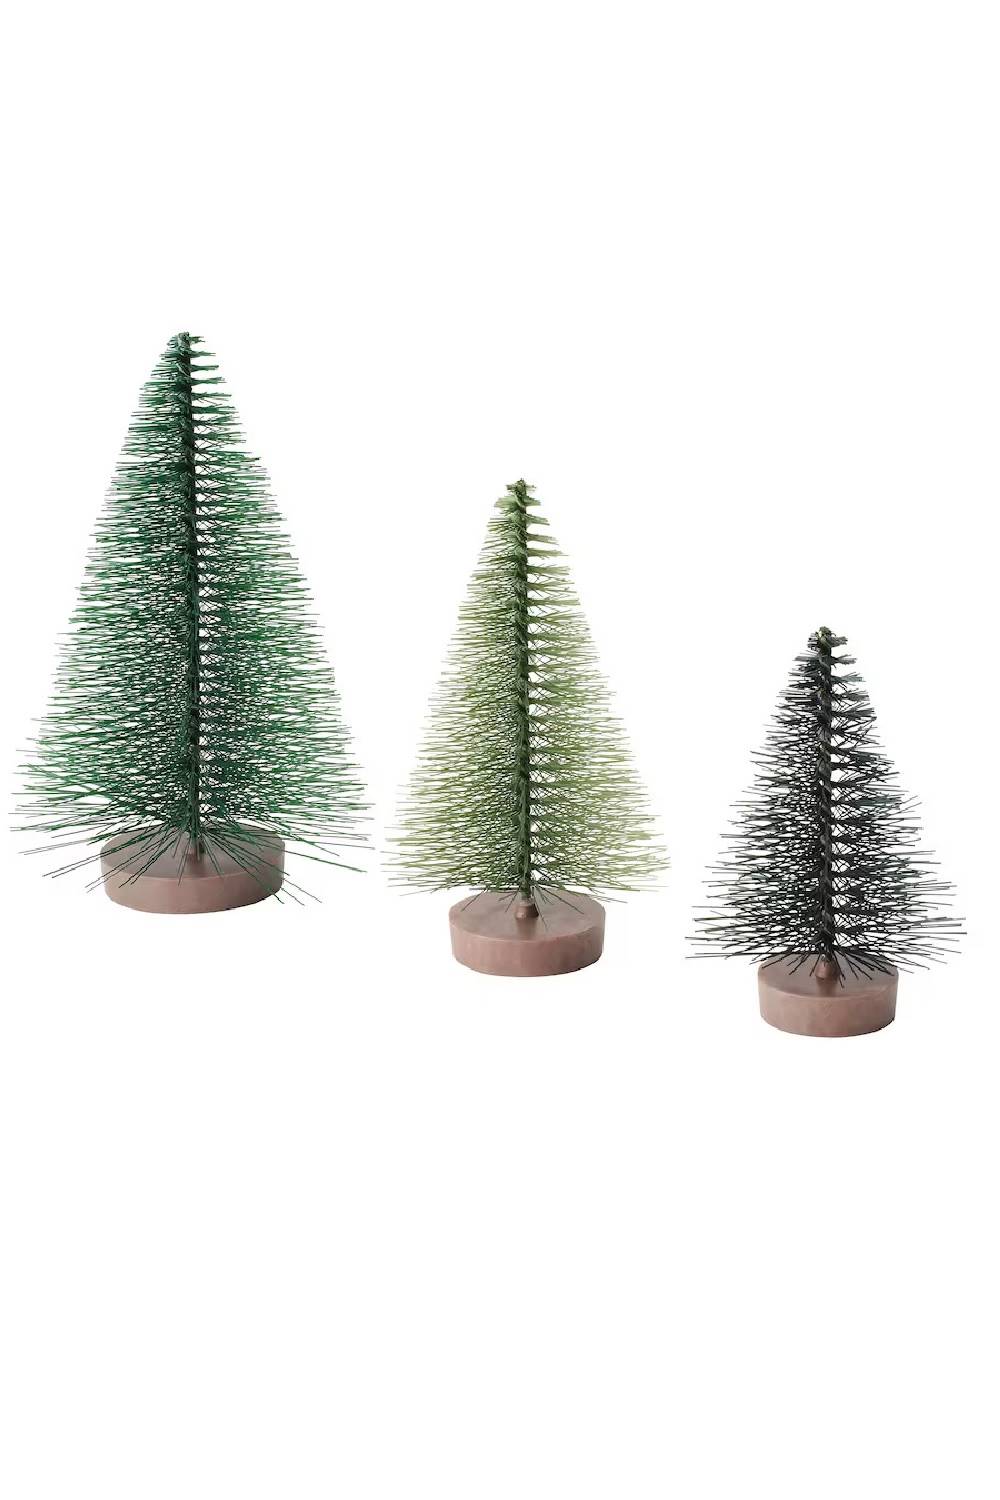 Decoración de Navidad en Ikea: juego de árboles